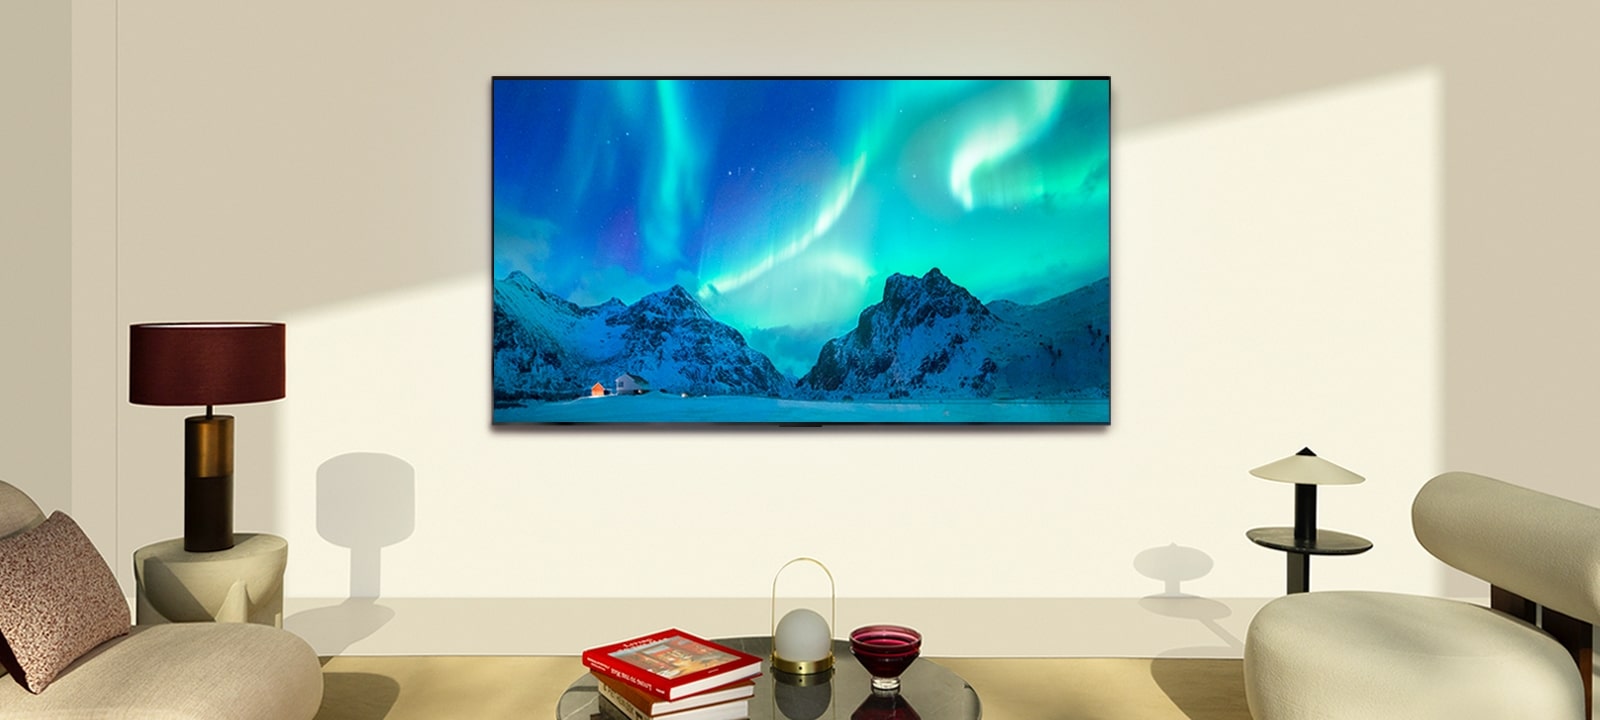 LG OLED TV en una moderna sala de estar durante el día. La imagen en pantalla de la aurora boreal se muestra con los niveles de brillo ideales.